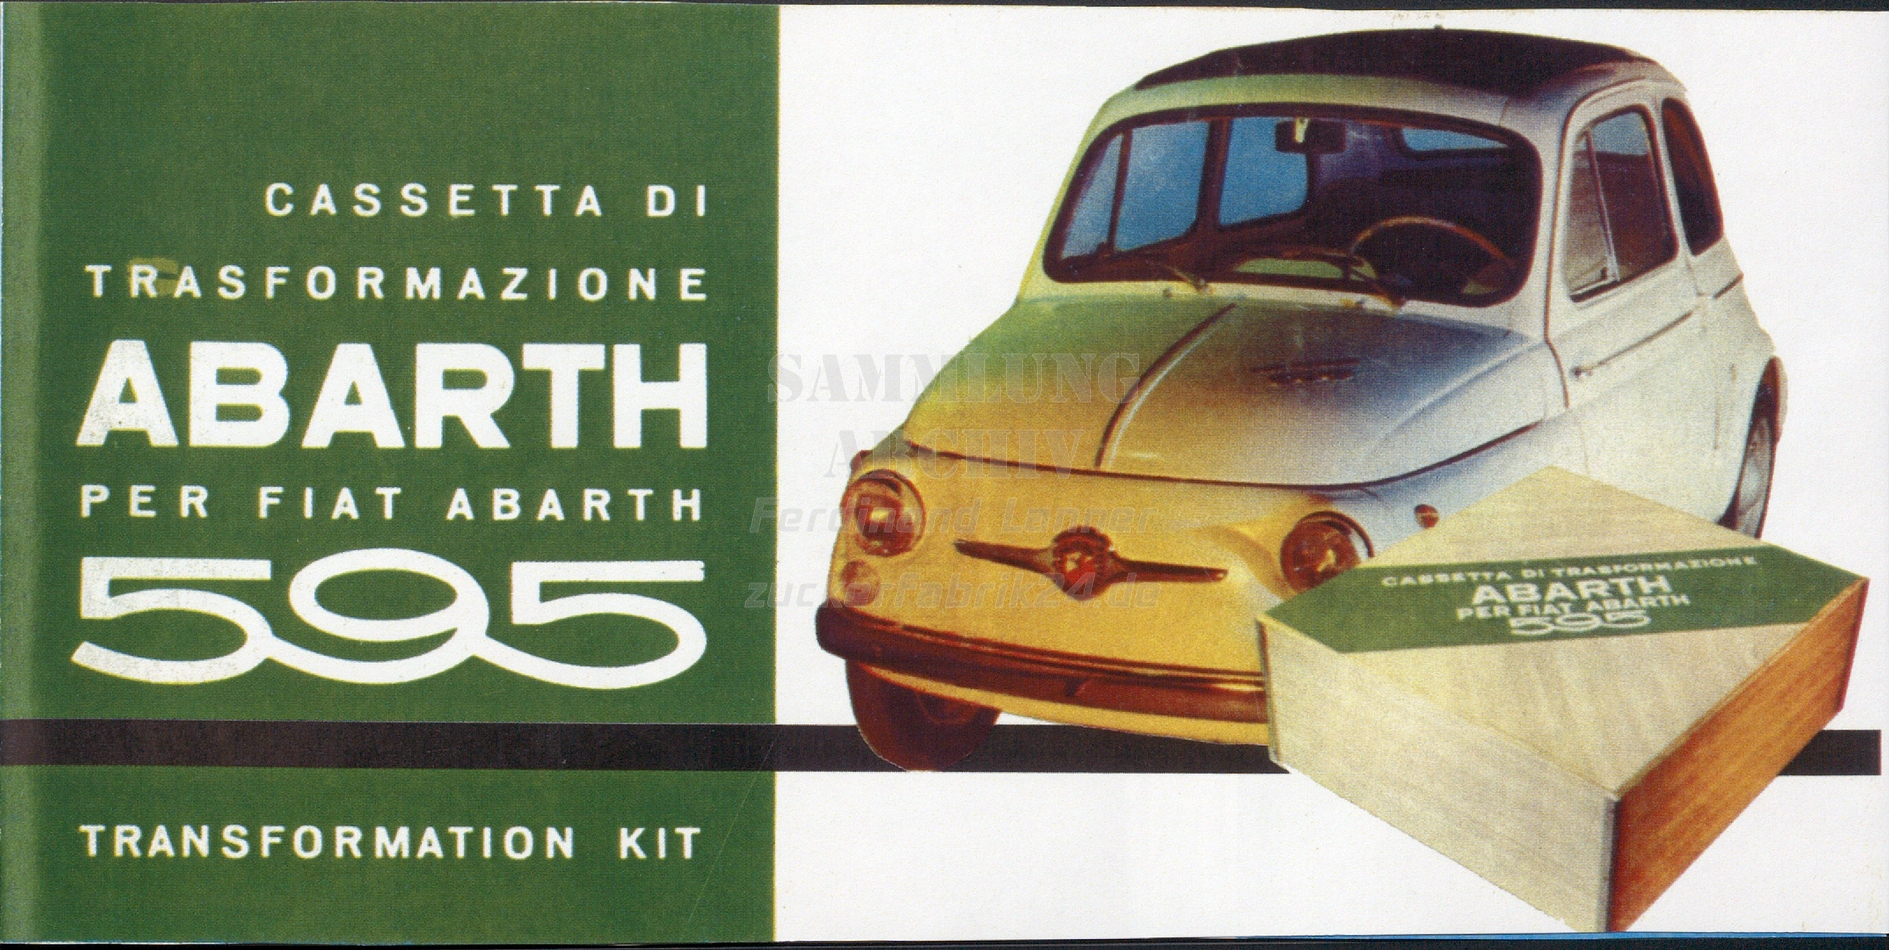 Printausgabe von Fiat 500 Katalog im Januar 2018 : Autoliteratur Höpel